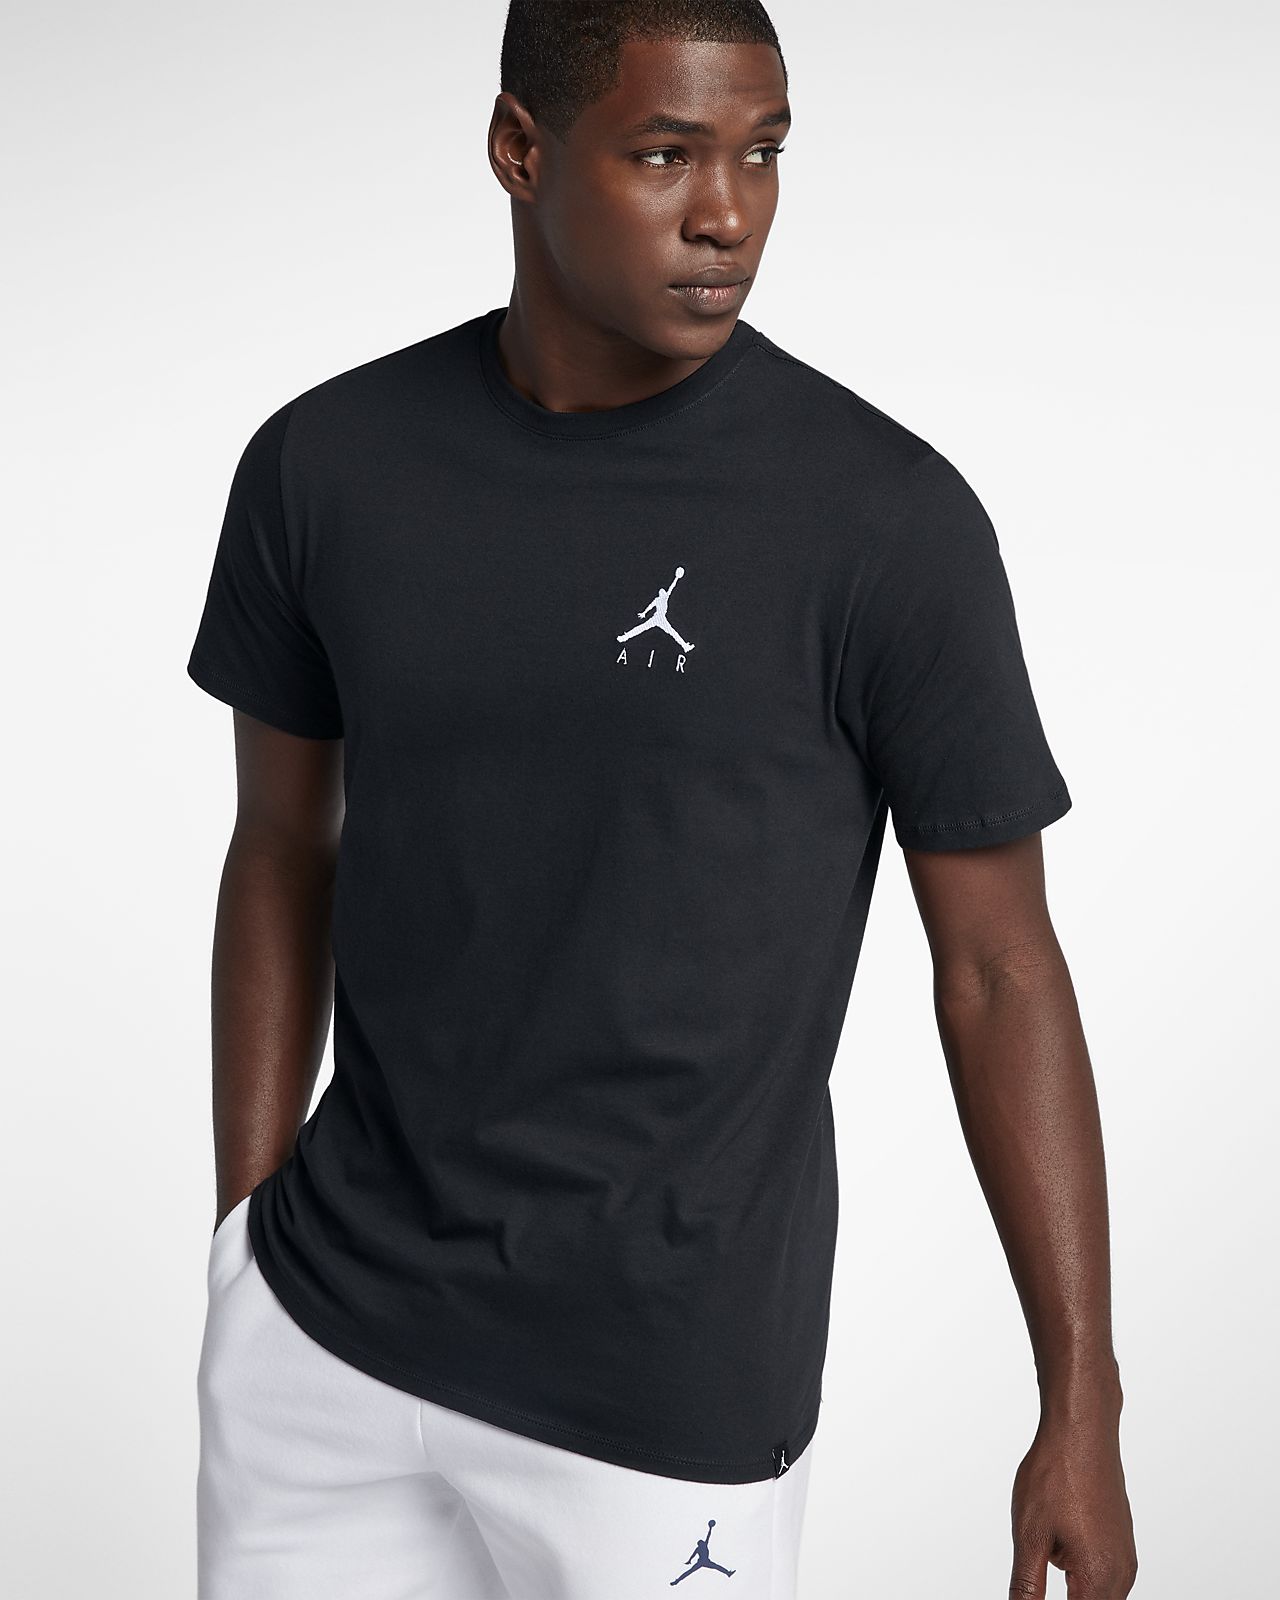 Jordan Jumpman Air Men's T-Shirt. Nike NZ